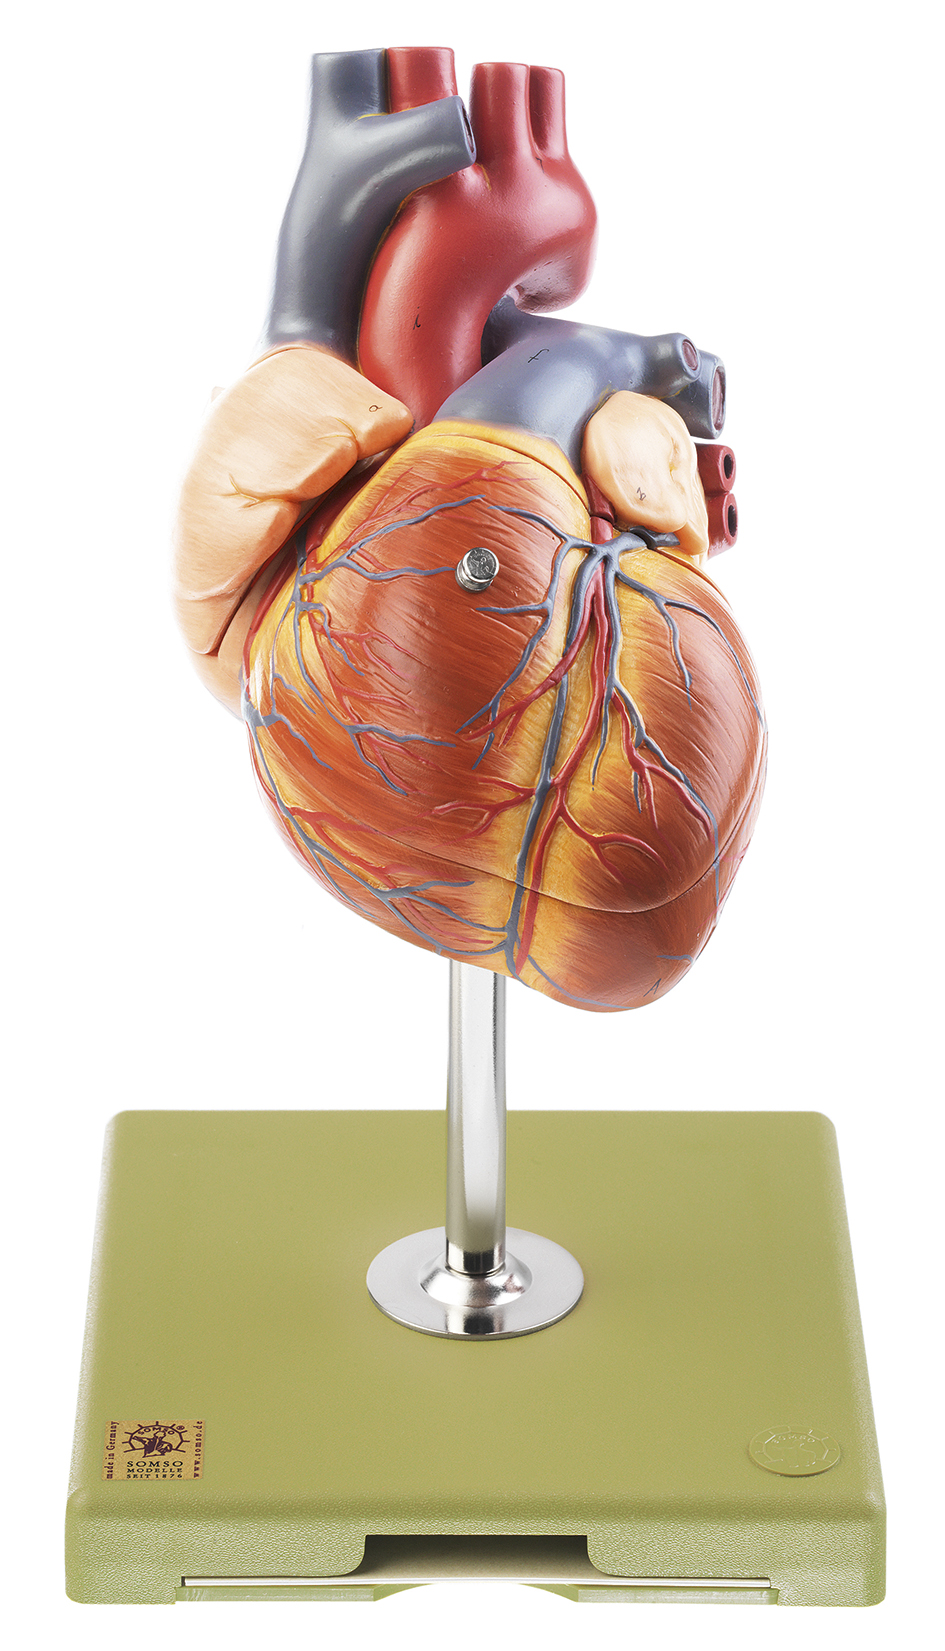 Herz mit Reizleitungssystem, Bestellnummer HS 6/1, SOMSO-Modelle